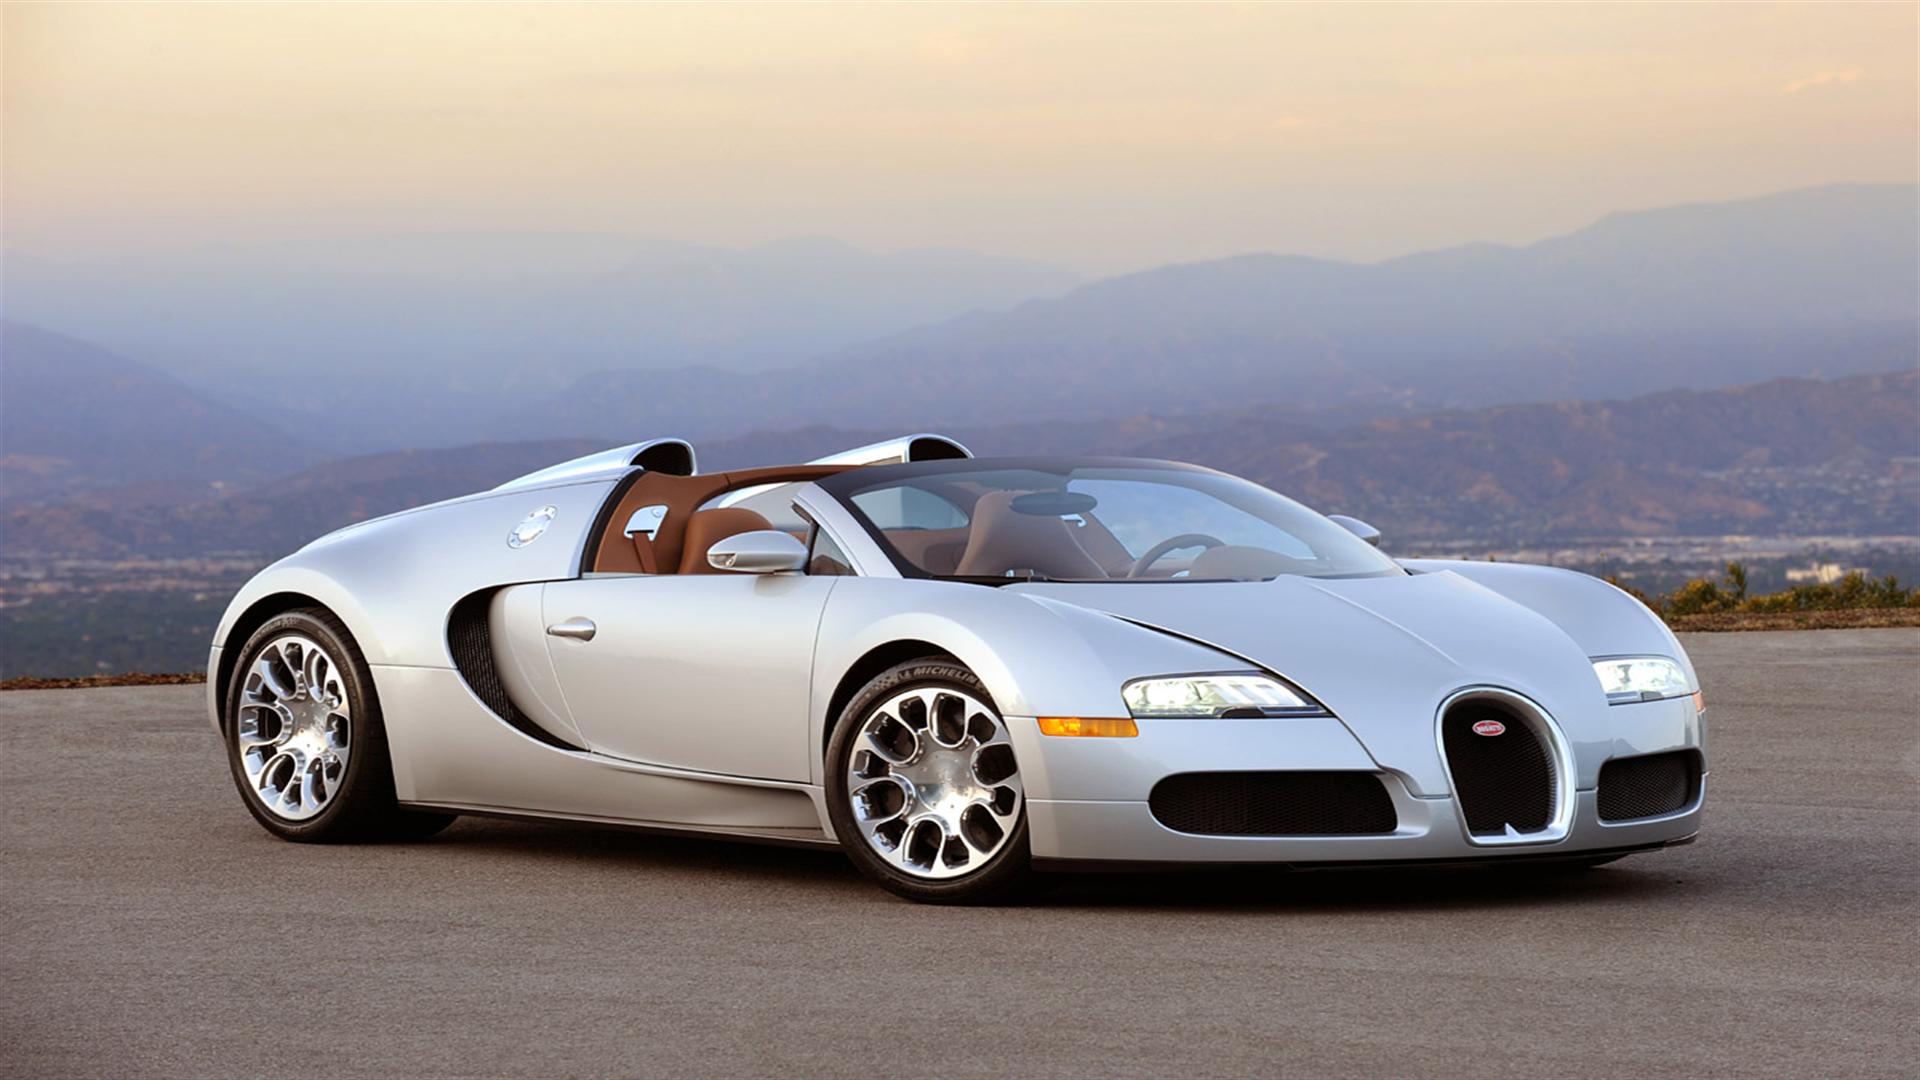 Image For Bugatti Wallpaper HD 1080p